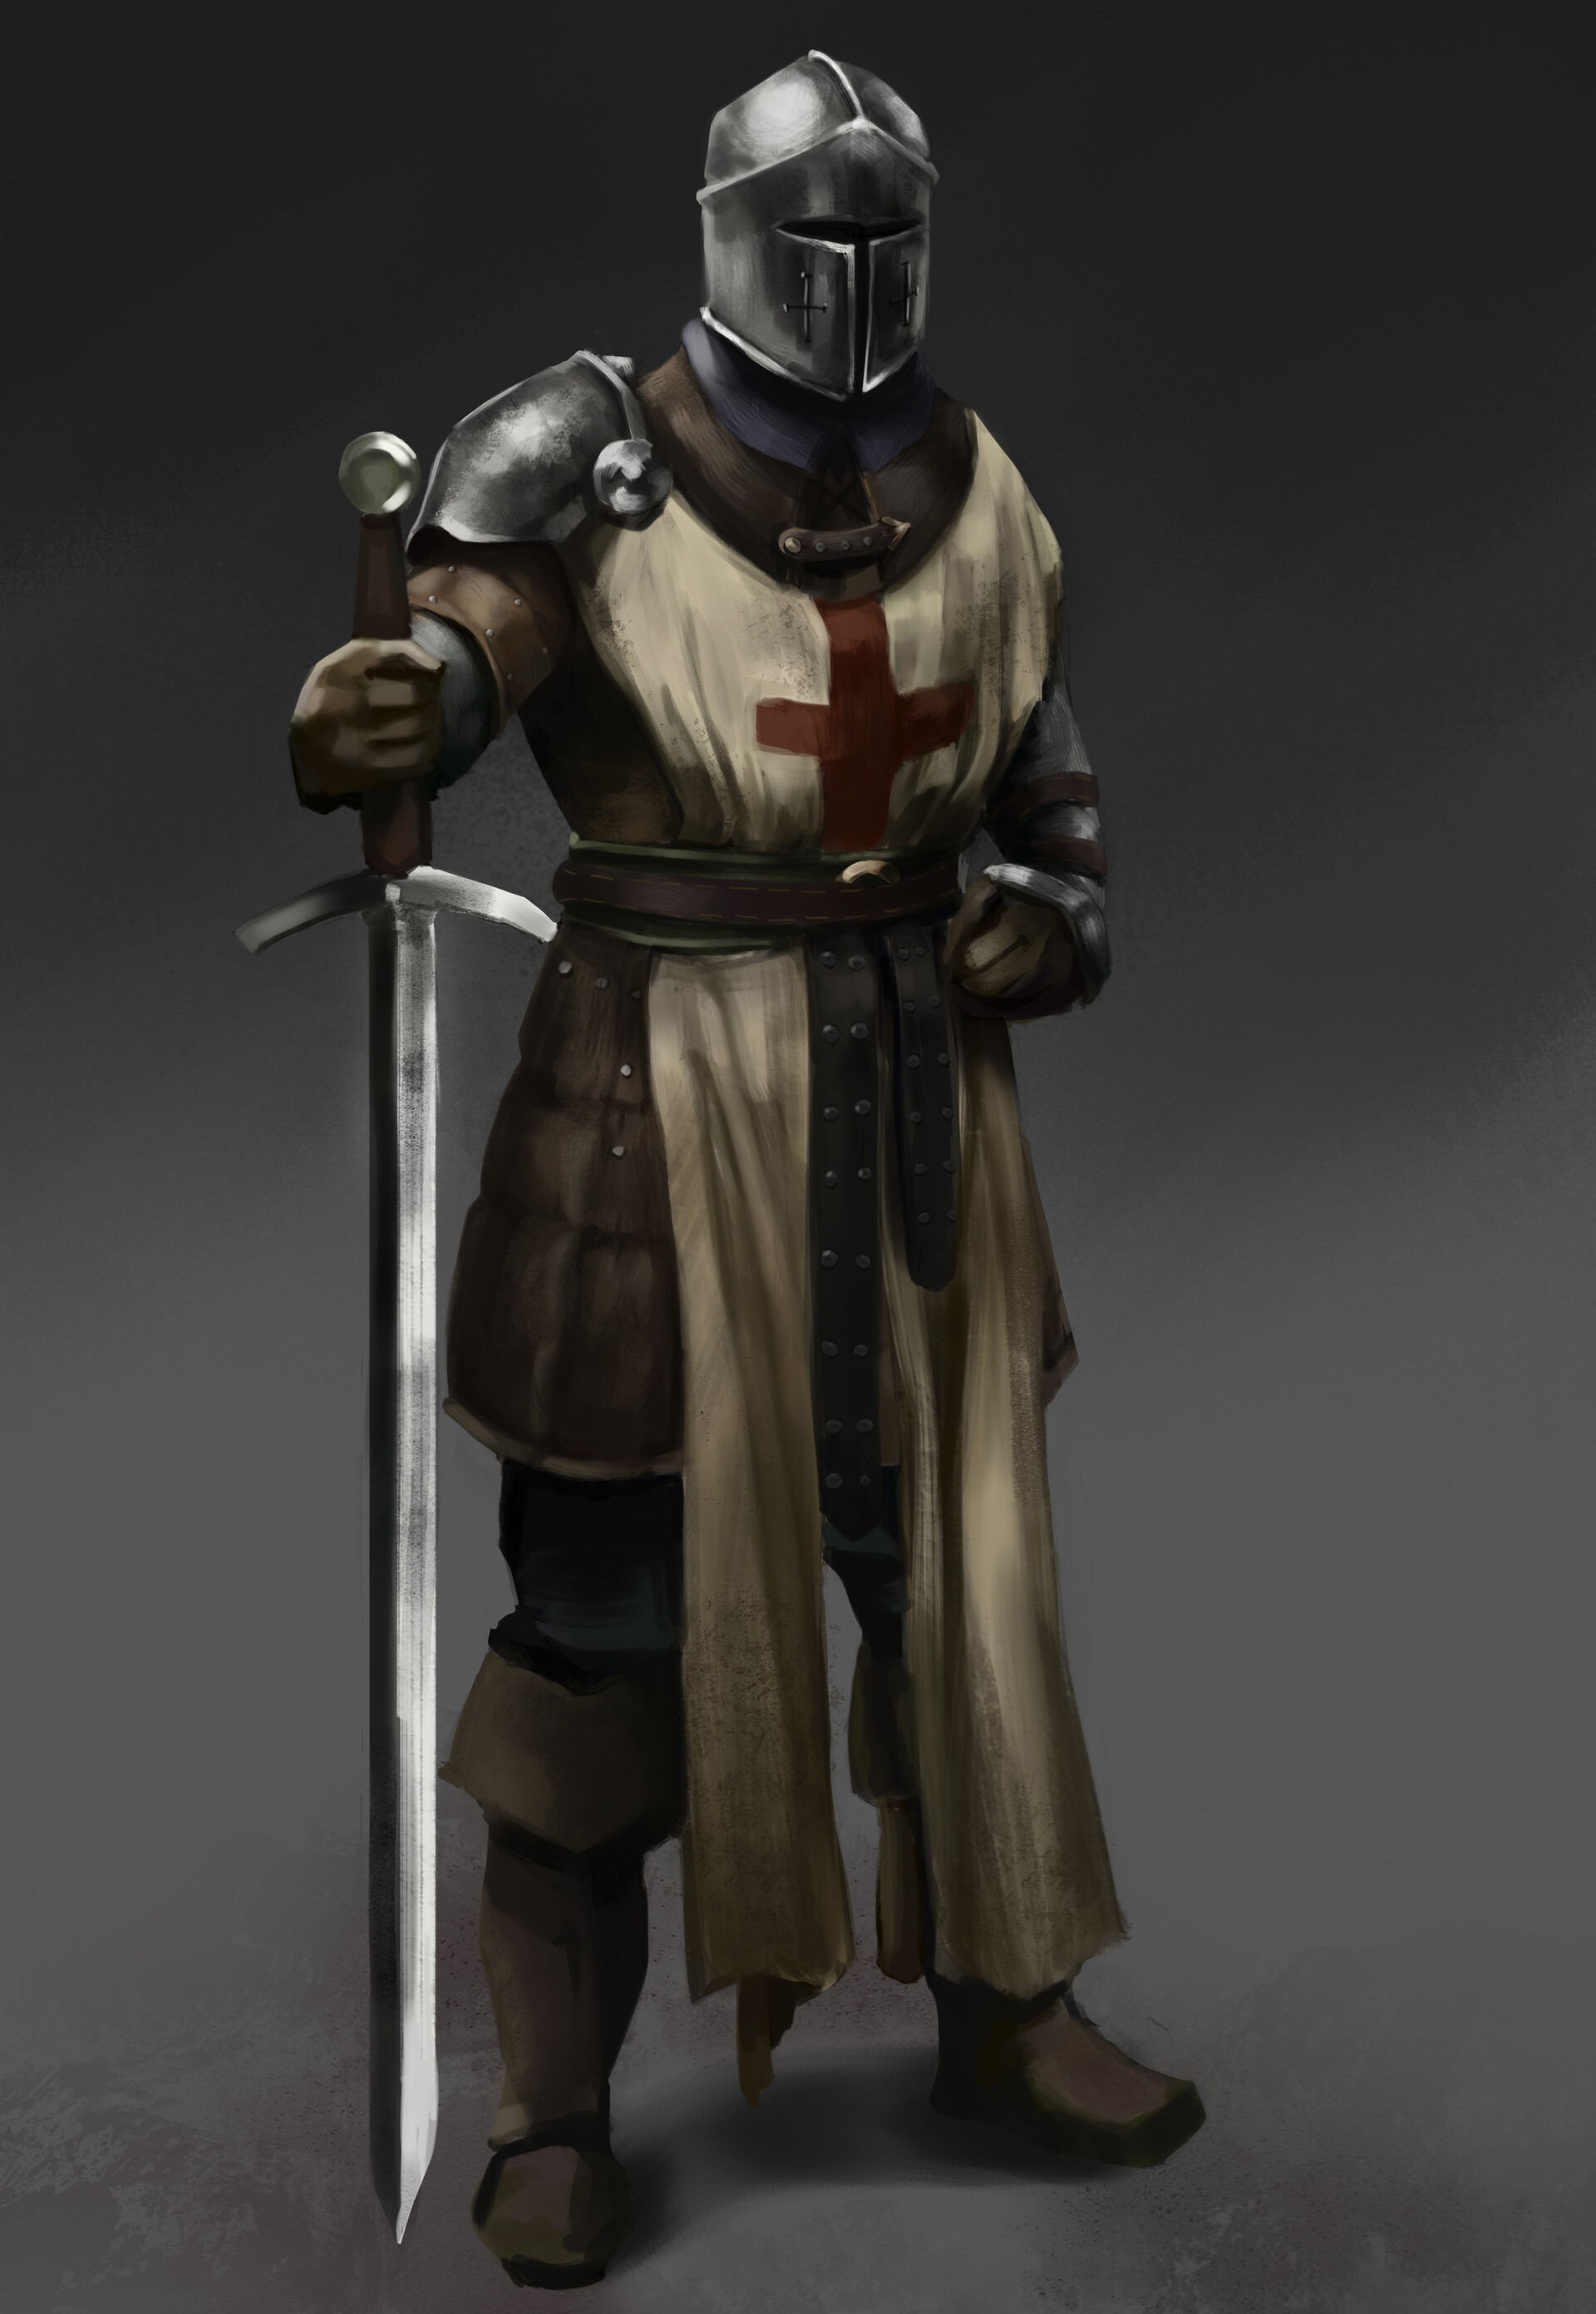 ArtStation - Medieval Knight Concept Art